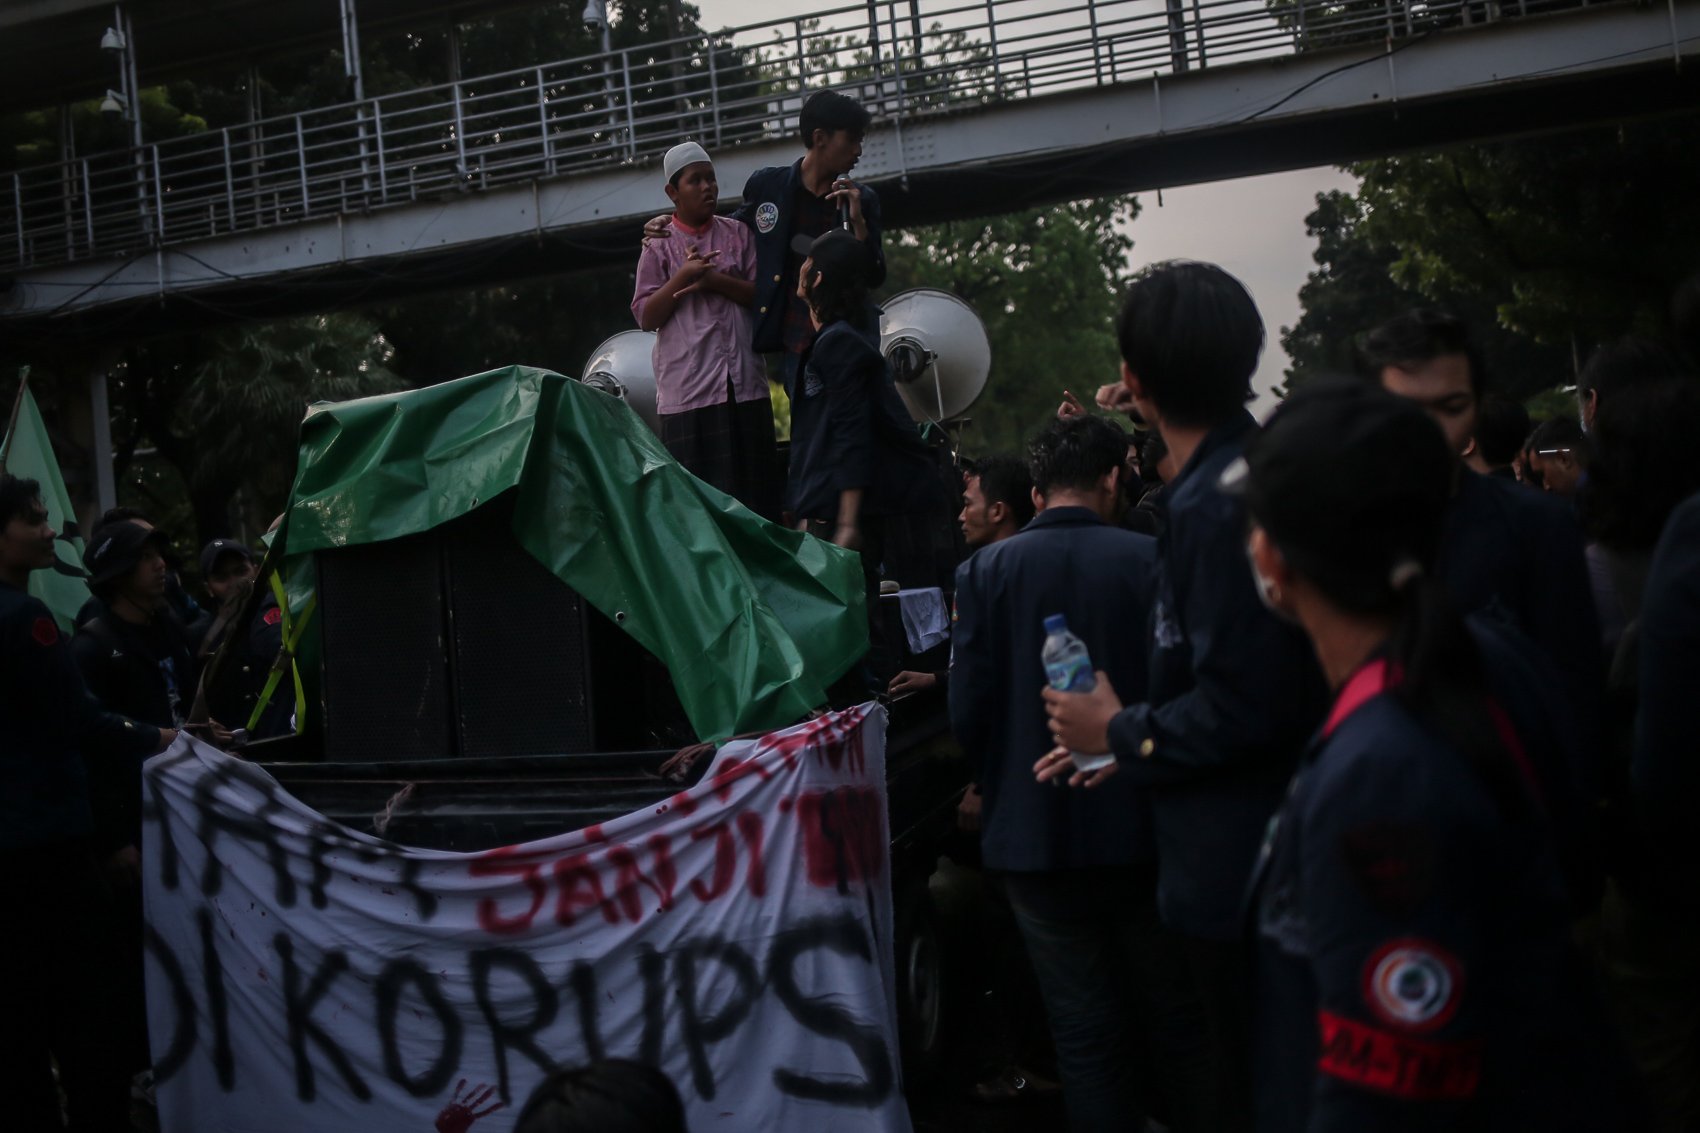 Mahasiswa Universitas Trisakti melakukan aksi unjuk rasa di kawasan Patung Kuda, Jakarta, Kamis (12/5/2022). Aksi tersebut untuk memperingati 24 Tahun tragedi Trisakti pada 12 Mei 1998 yang menelan korban empat orang mahasiswa Trisakti saat memperjuangkan reformasi.